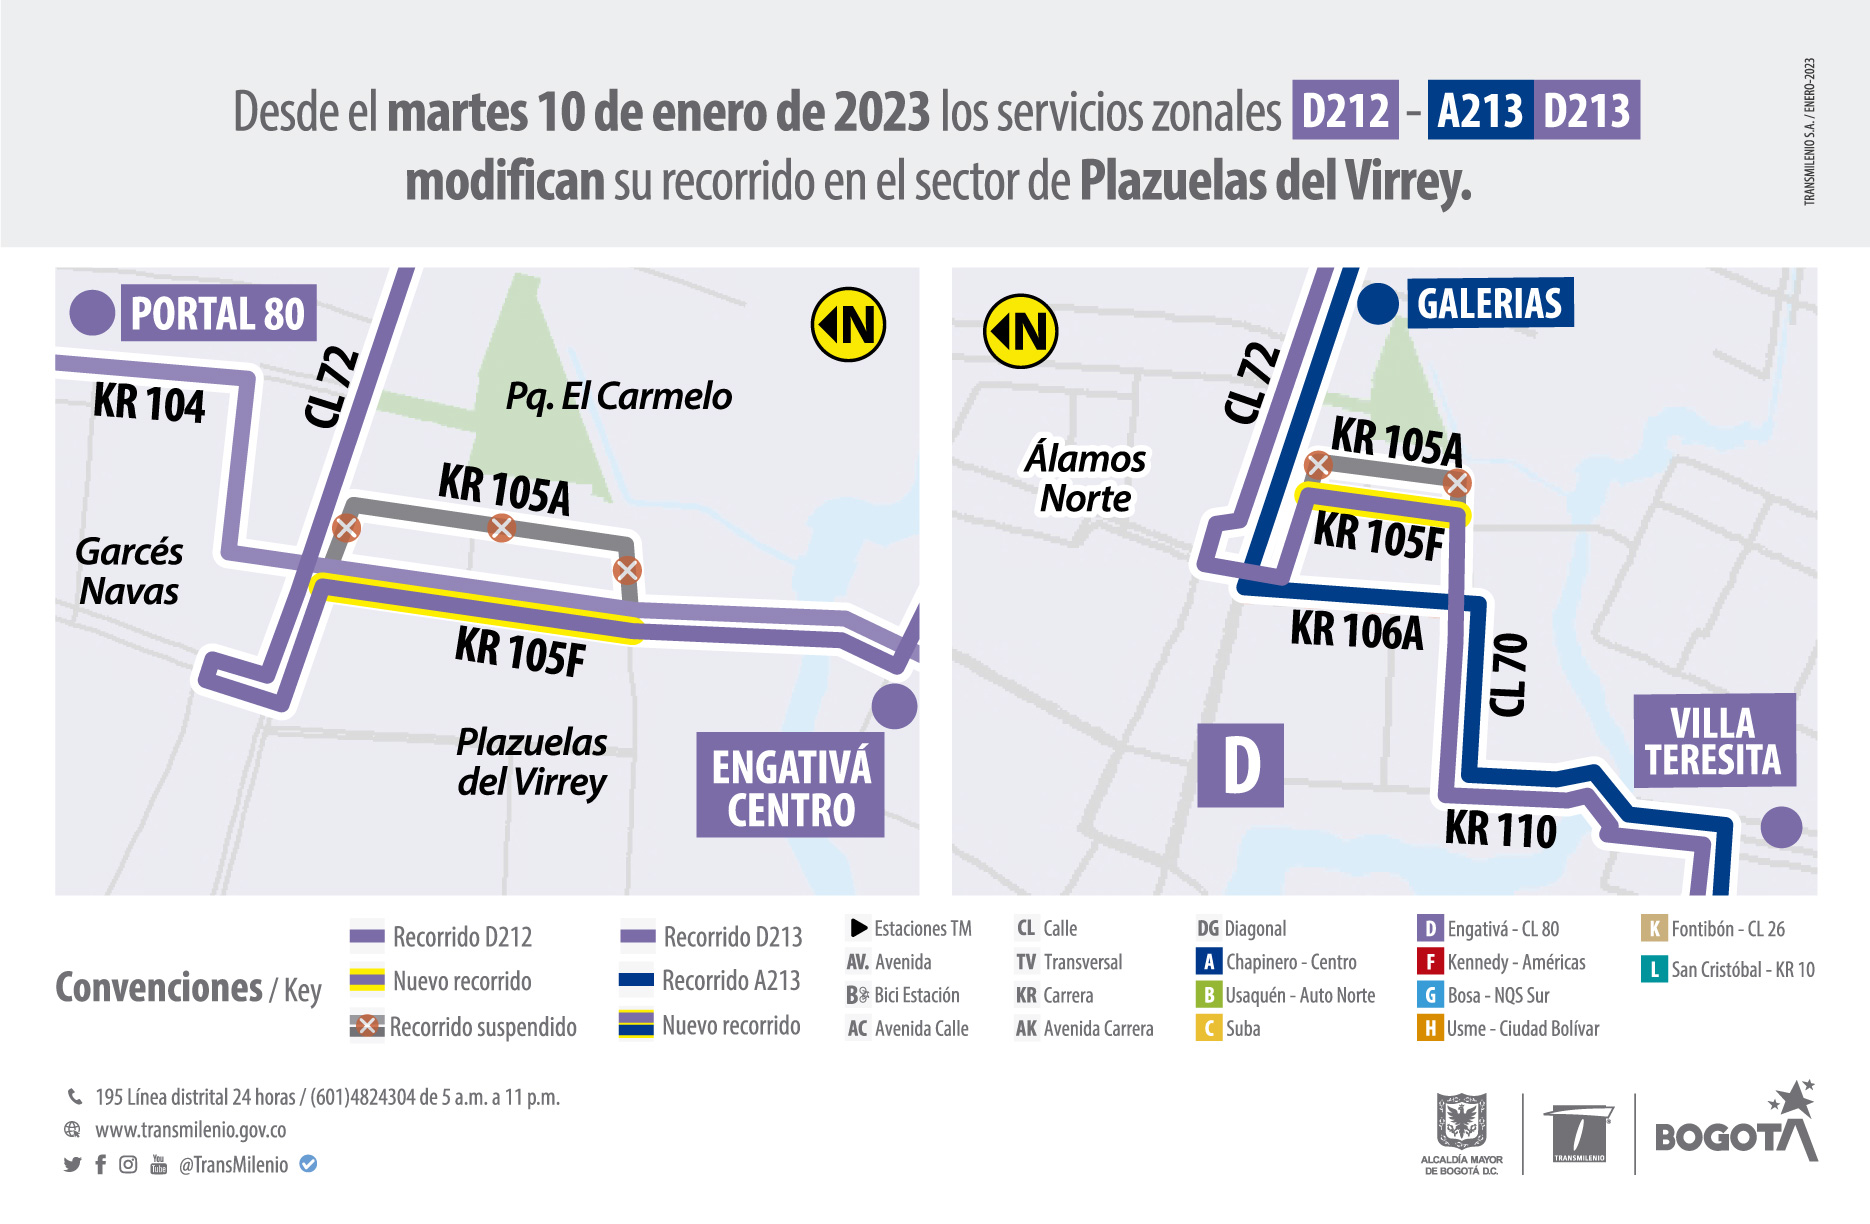 Rutas zonales D212 y D213 - A213 ajustan su trazado en Plazuelas del Virrey